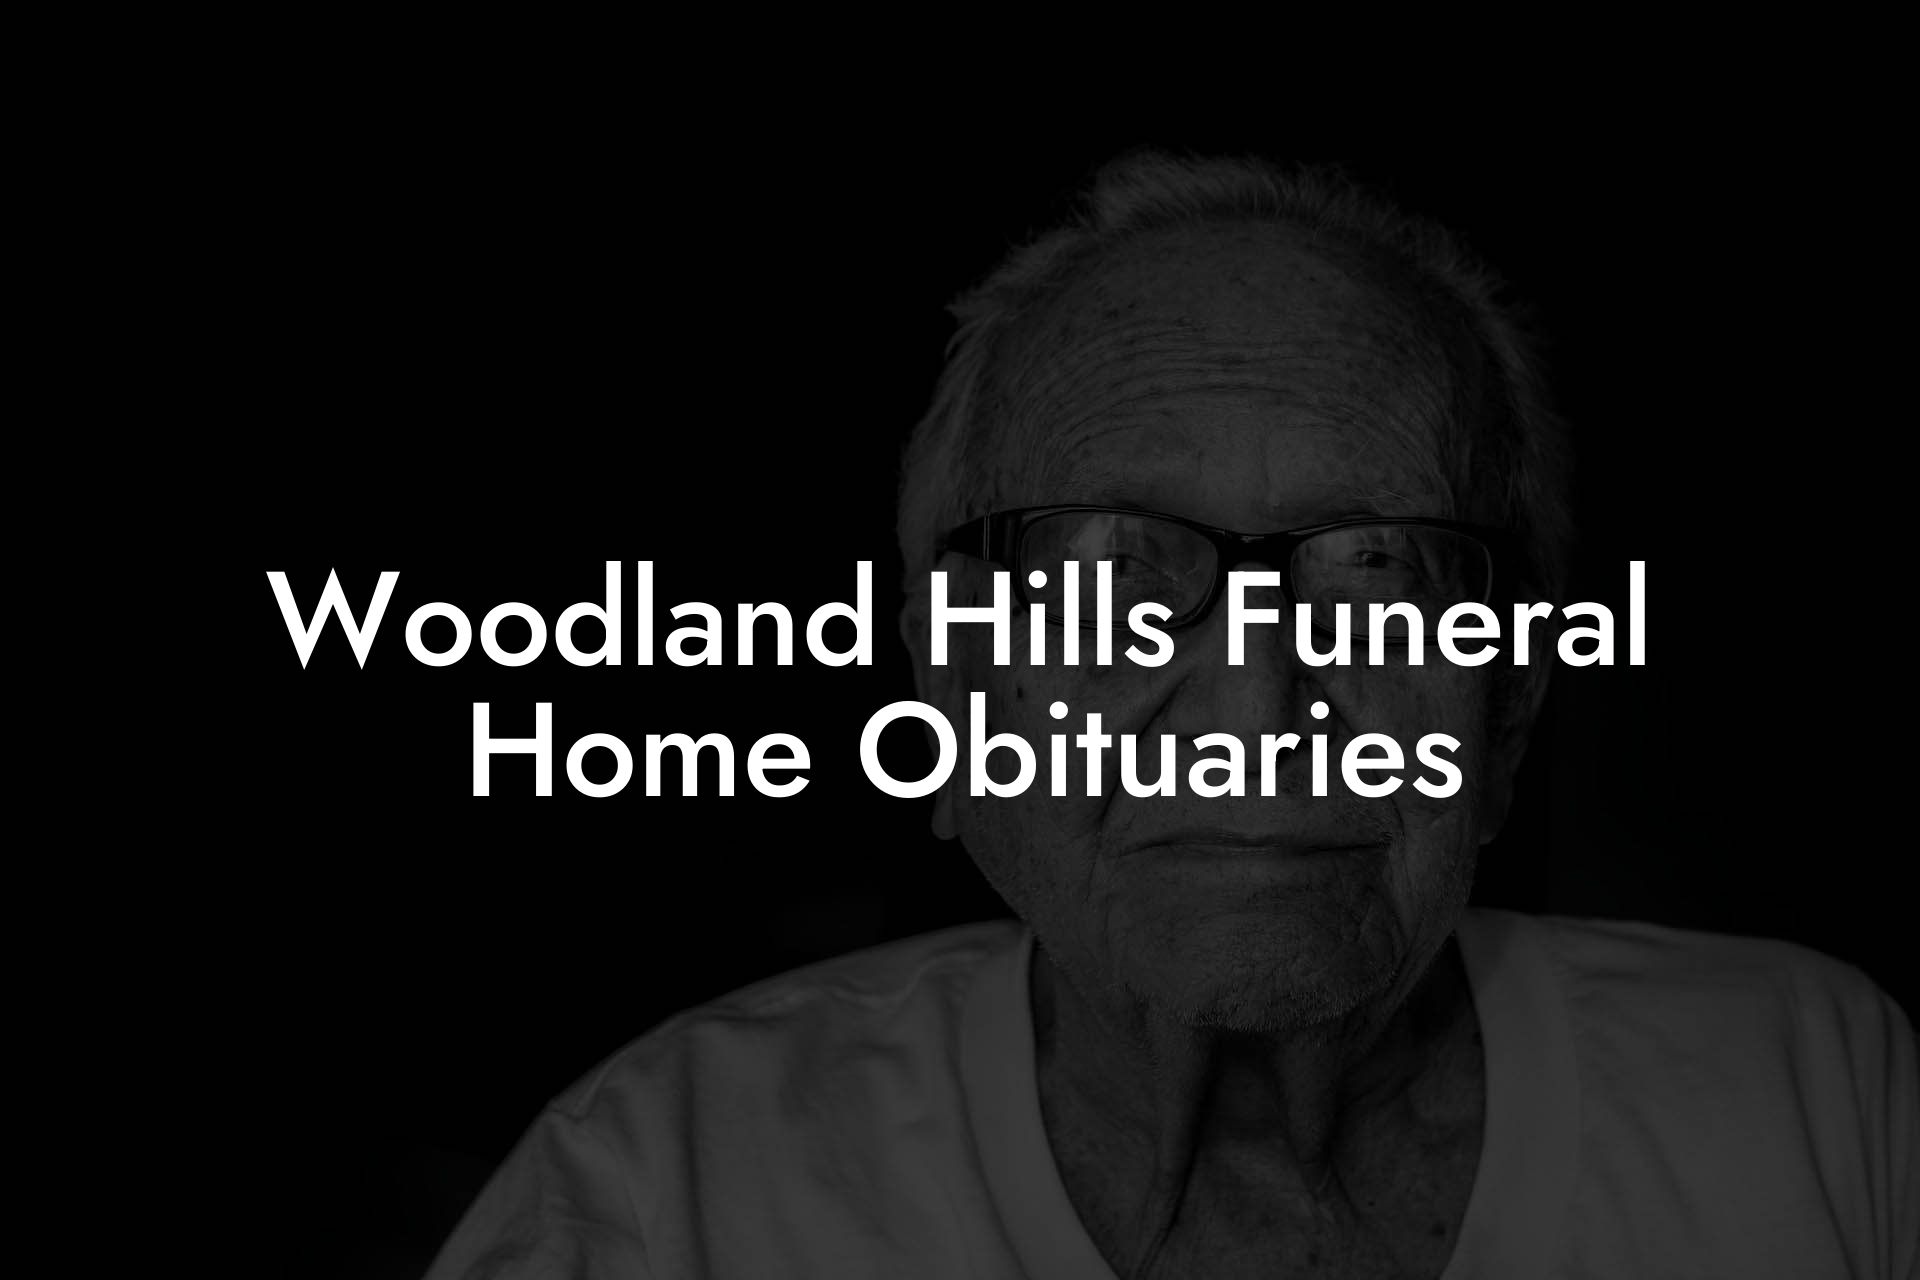 Woodland Hills Funeral Home Obituaries